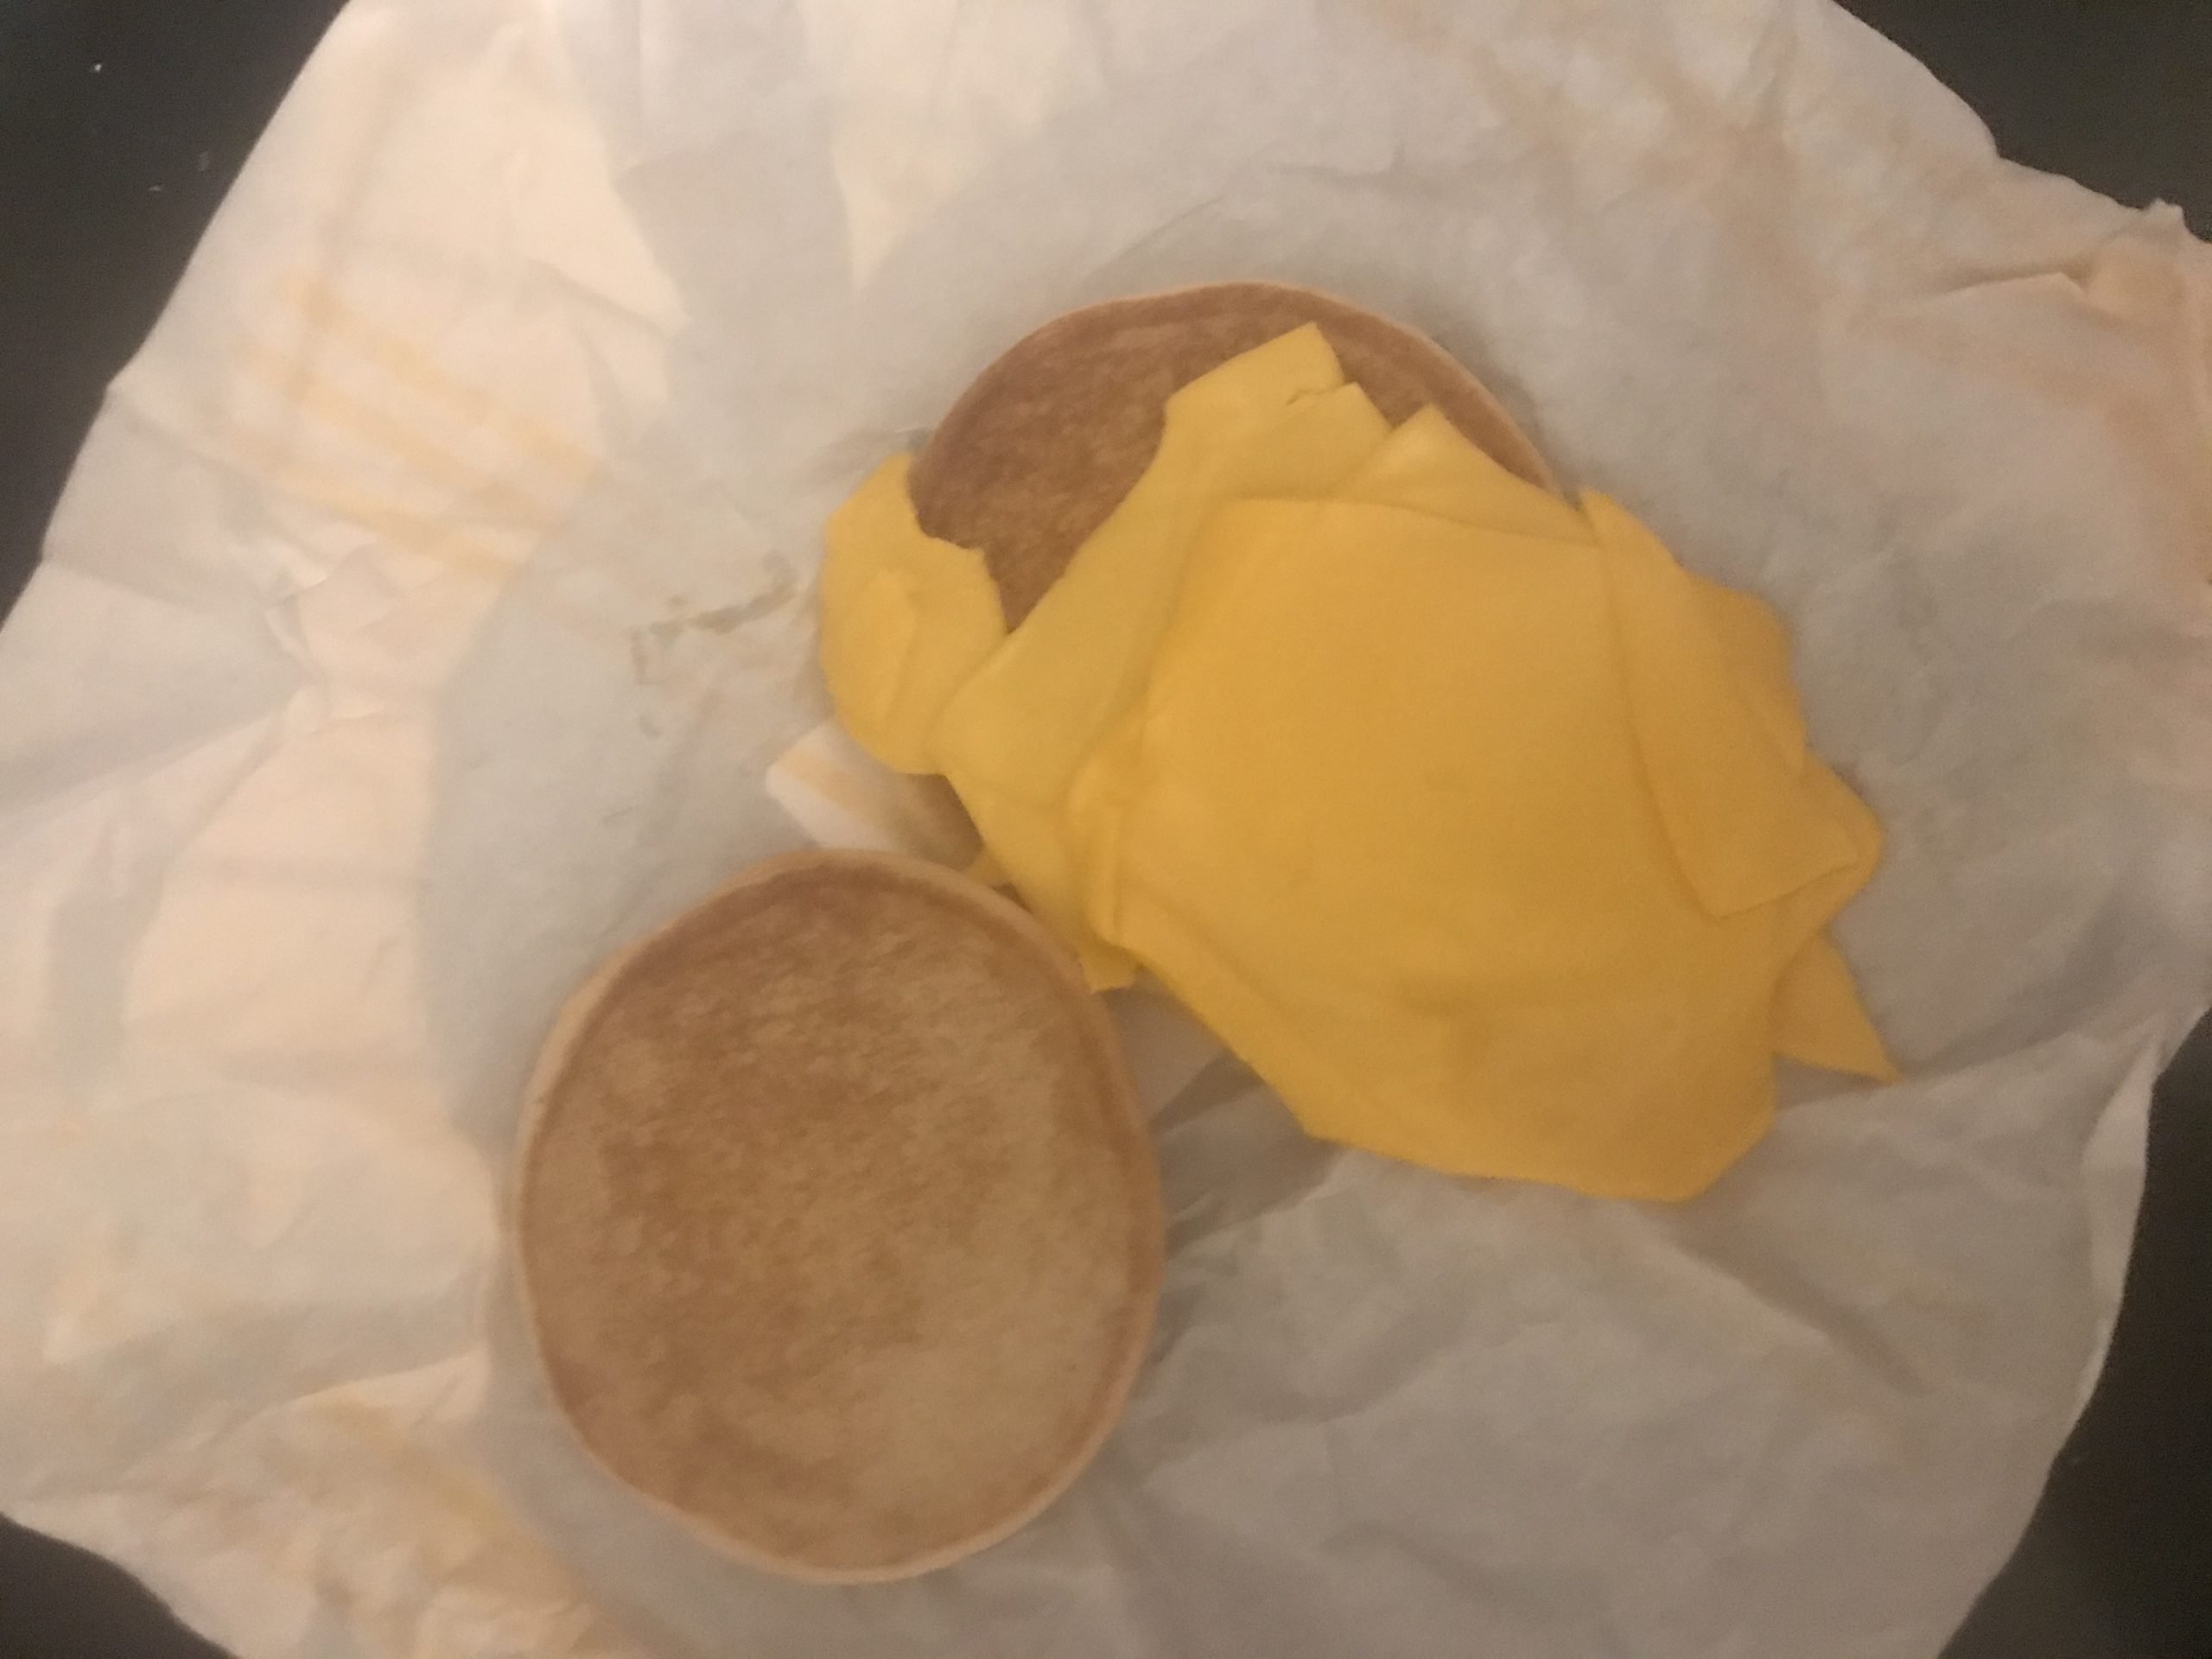 McDonalds complaint Missing my burger